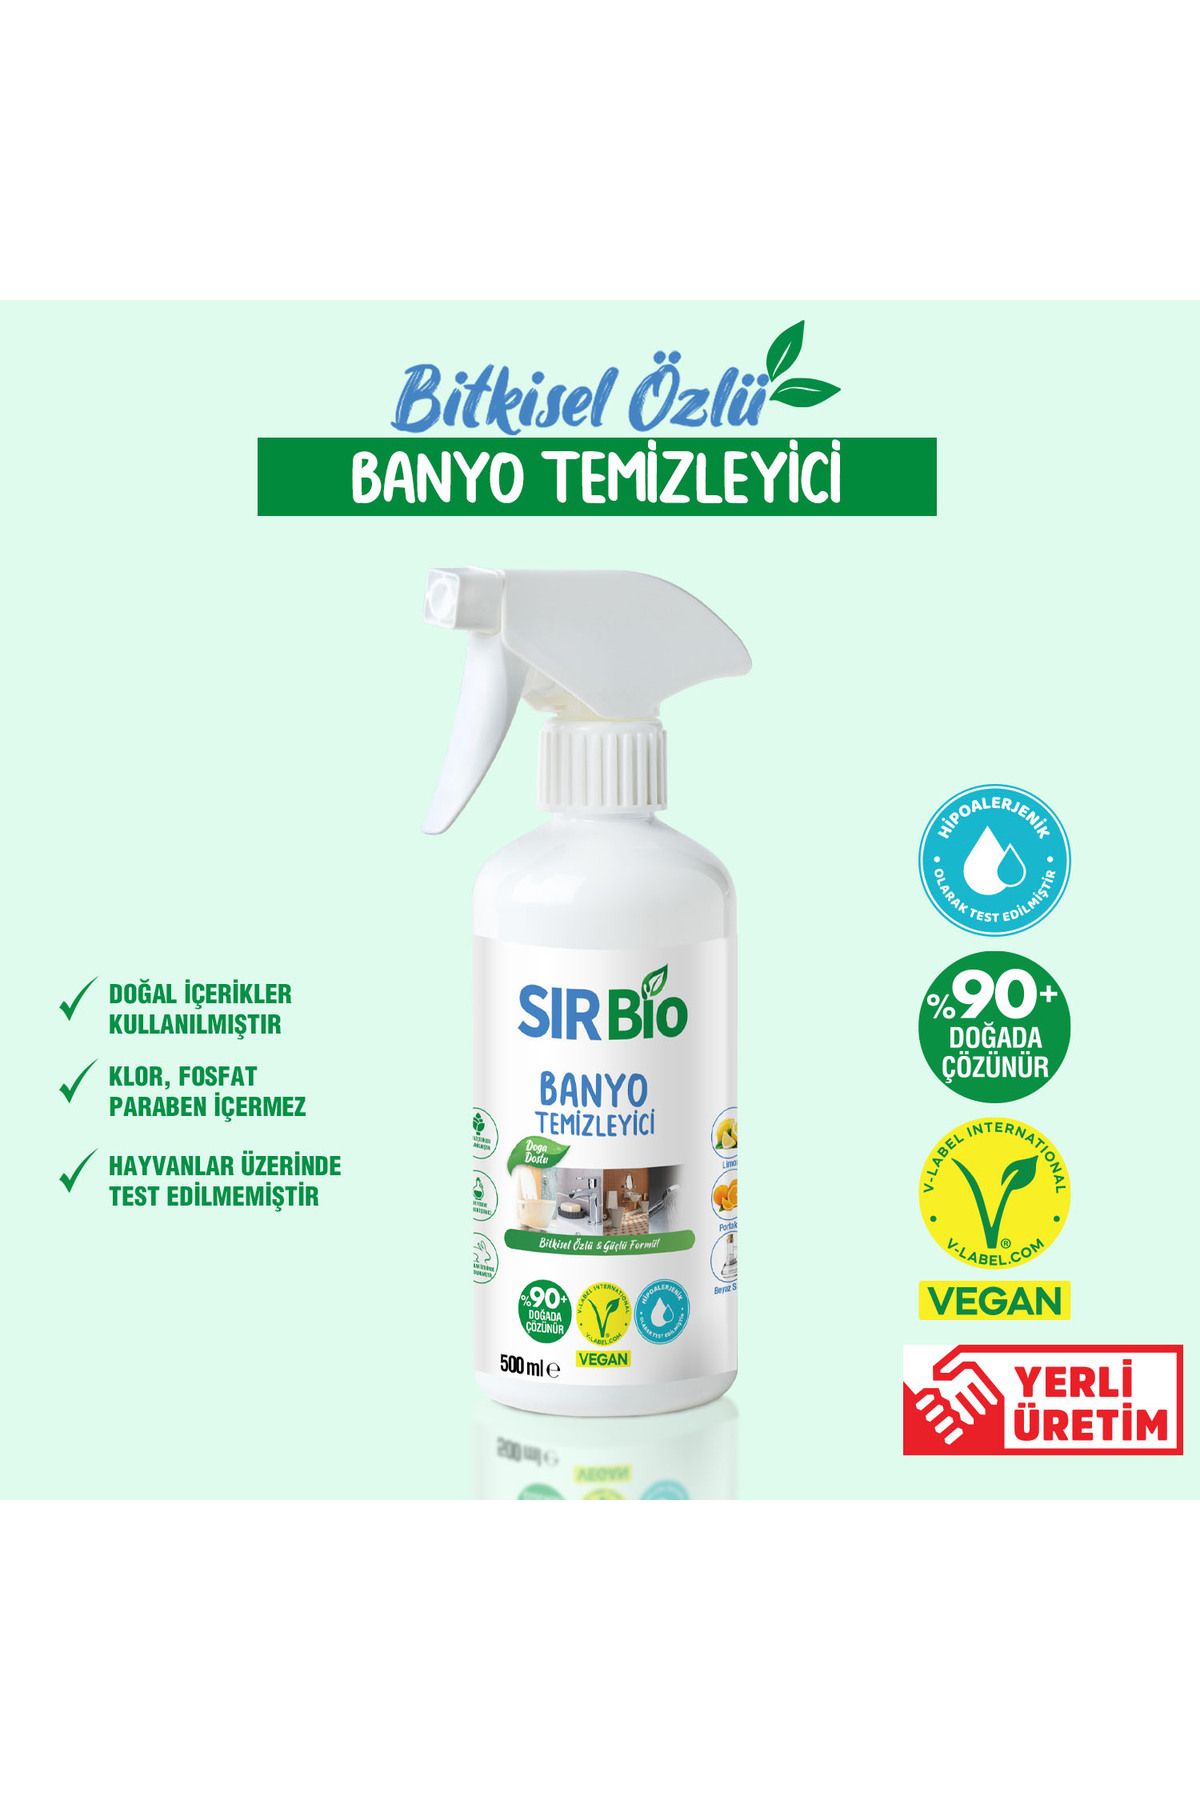 SIR Bio Bitkisel Özlü Banyo Temizleyici Güçlü Formül 500 ml